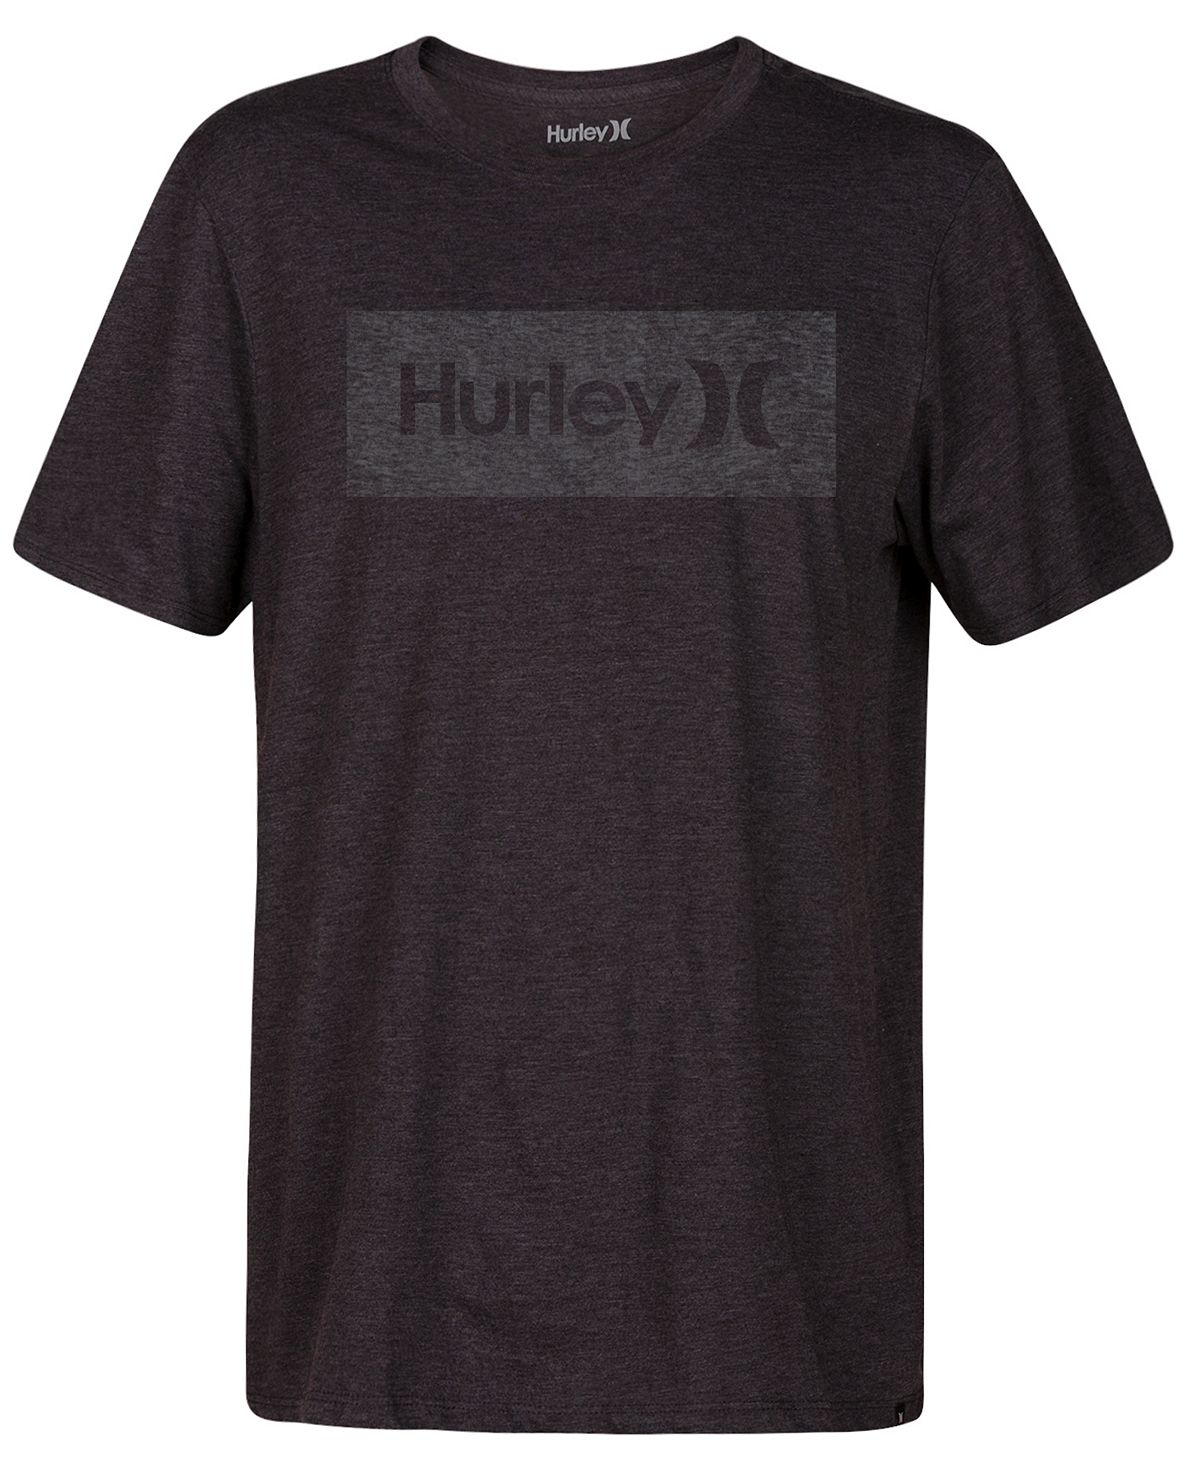 Мужская футболка с логотипом one and only box Hurley, мульти